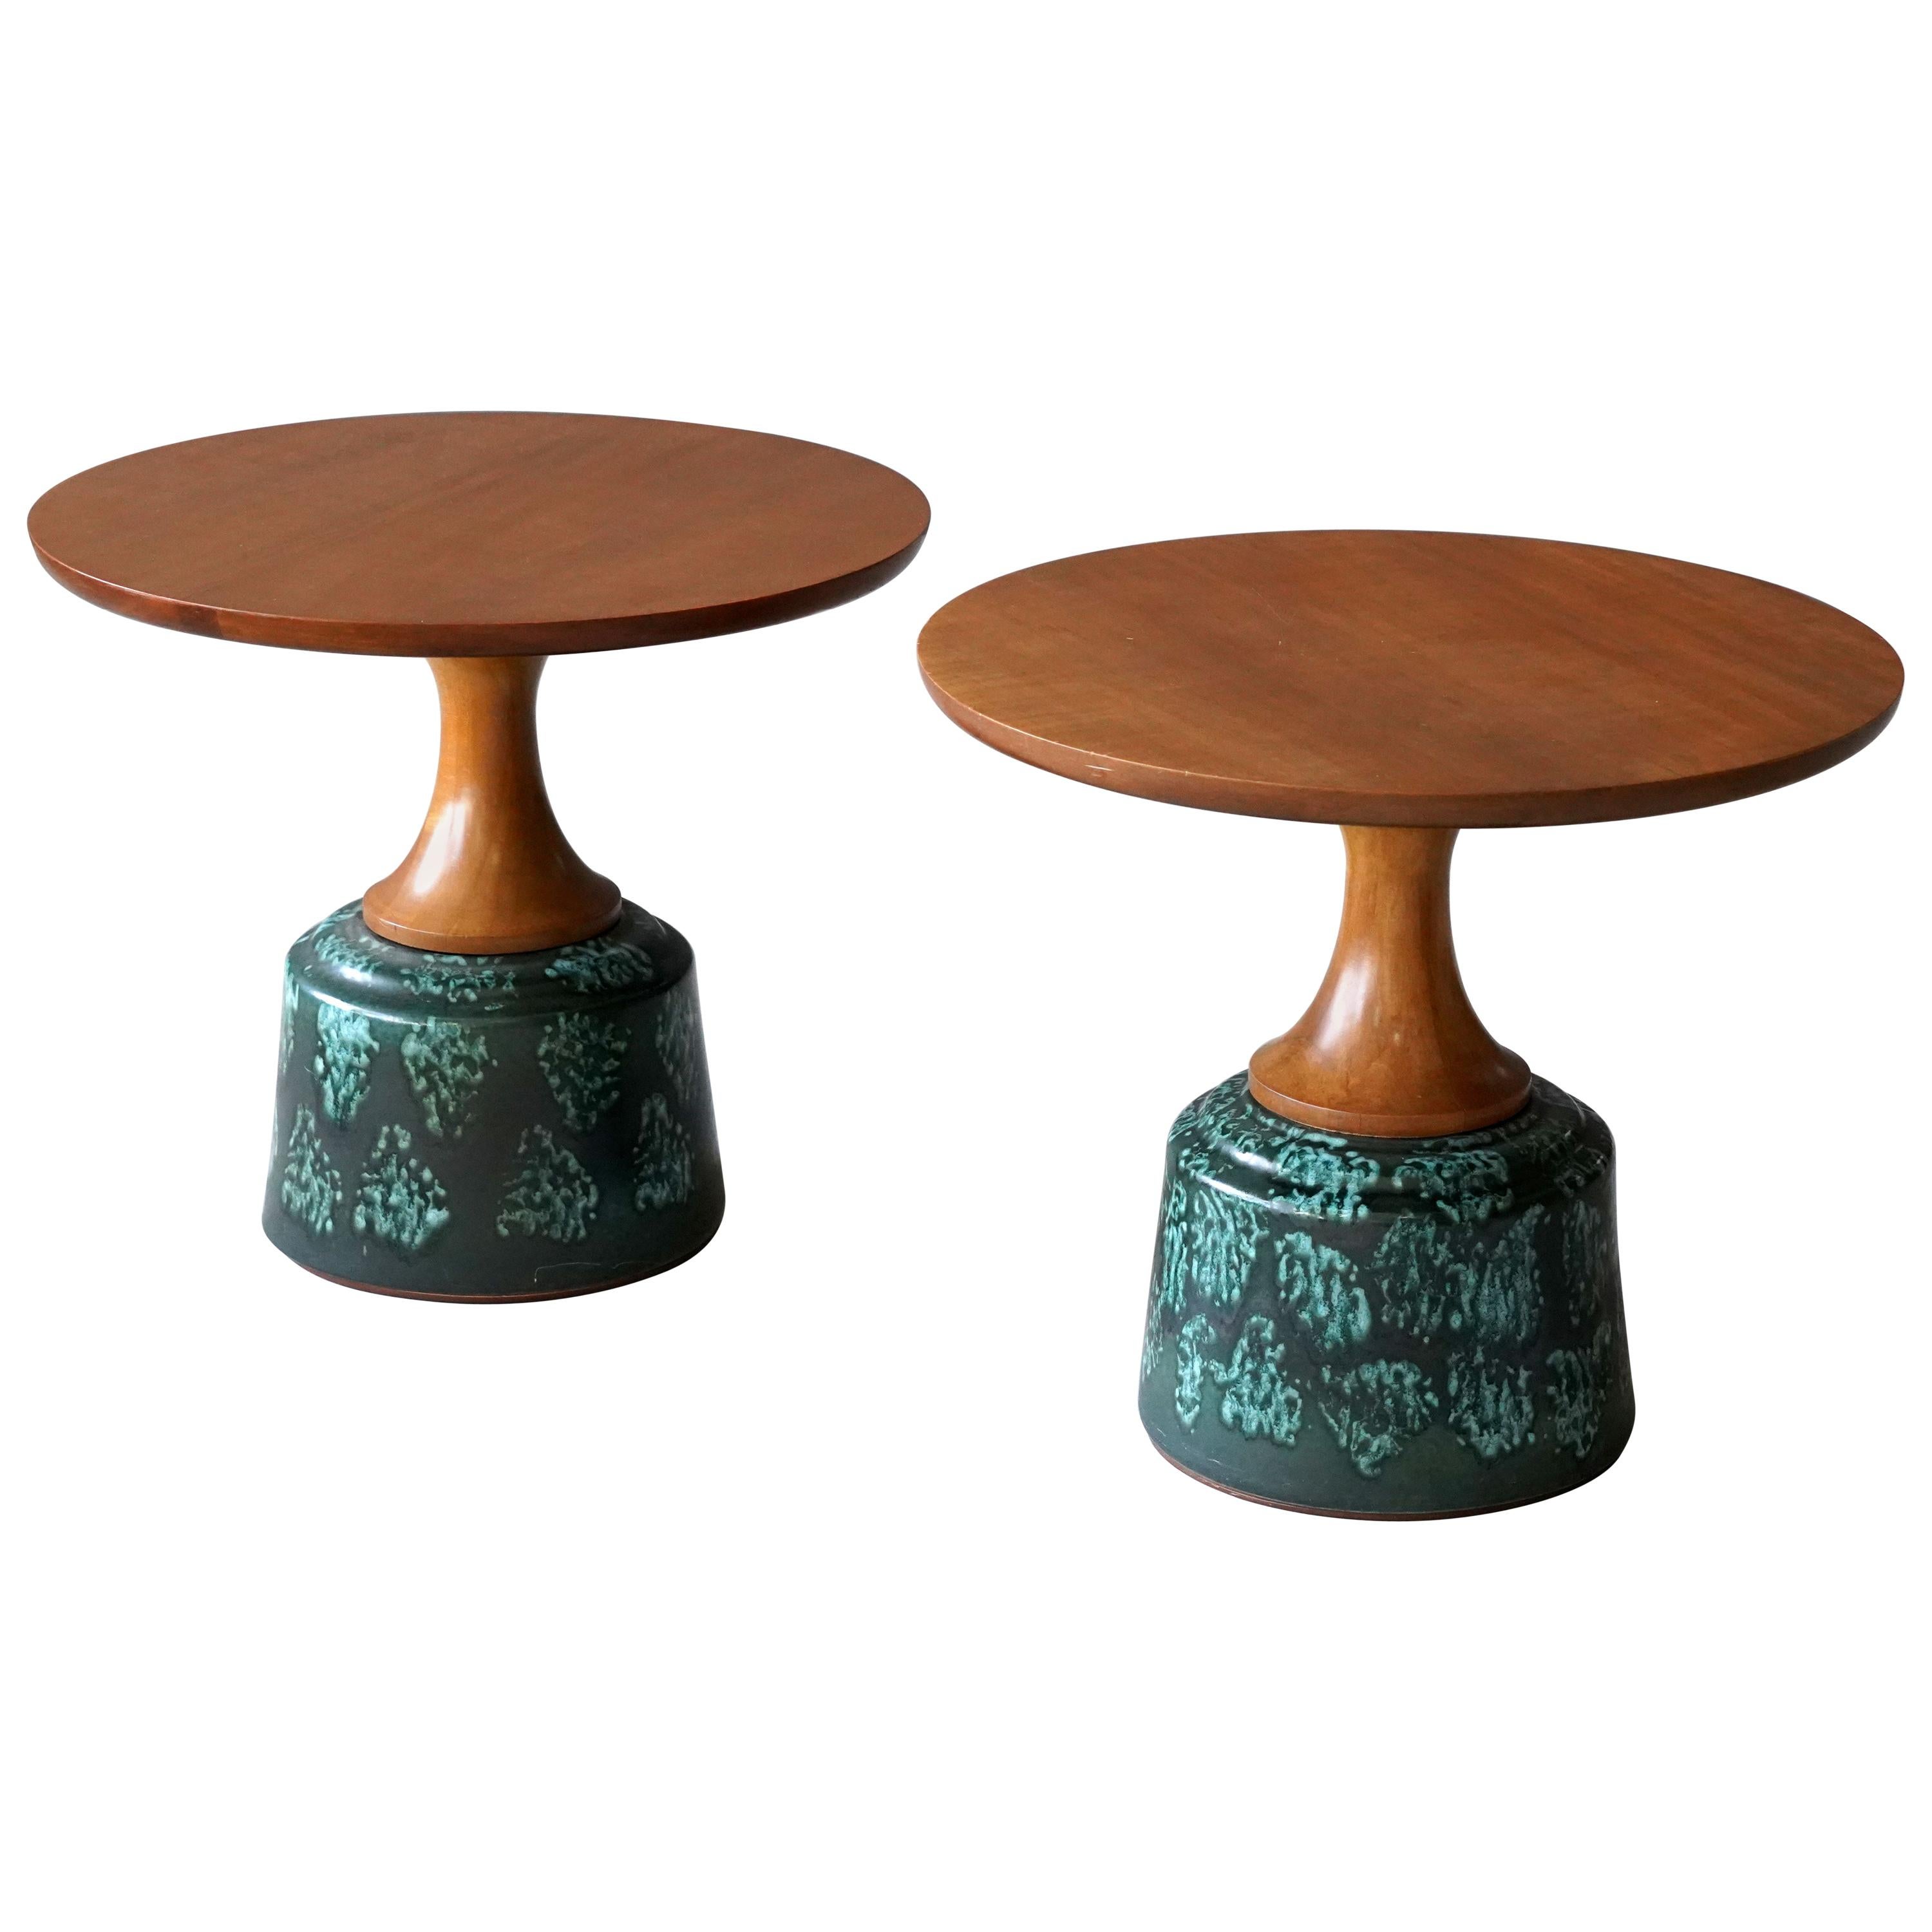 John Van Koert, Side Tables, Cherrywood, Glazed Ceramic, Drexel, America, 1956